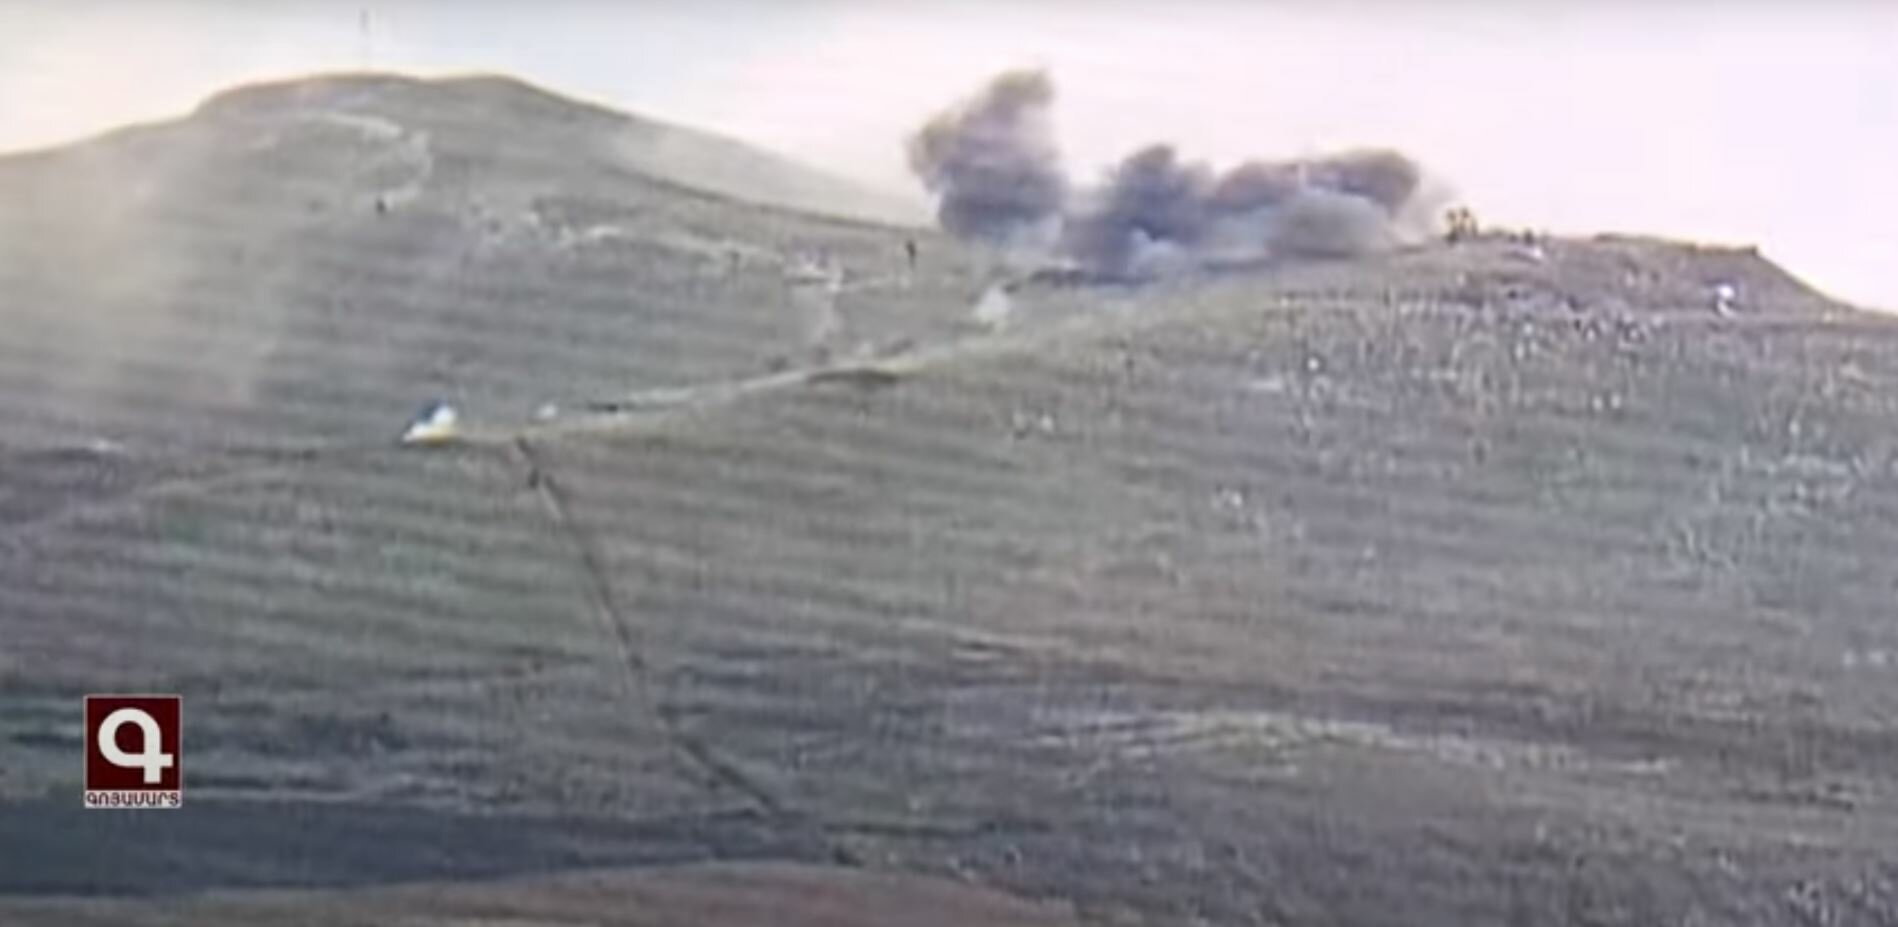 Солдаты Арцаха показали видео уничтожения азербайджанских позиций в Карабахе